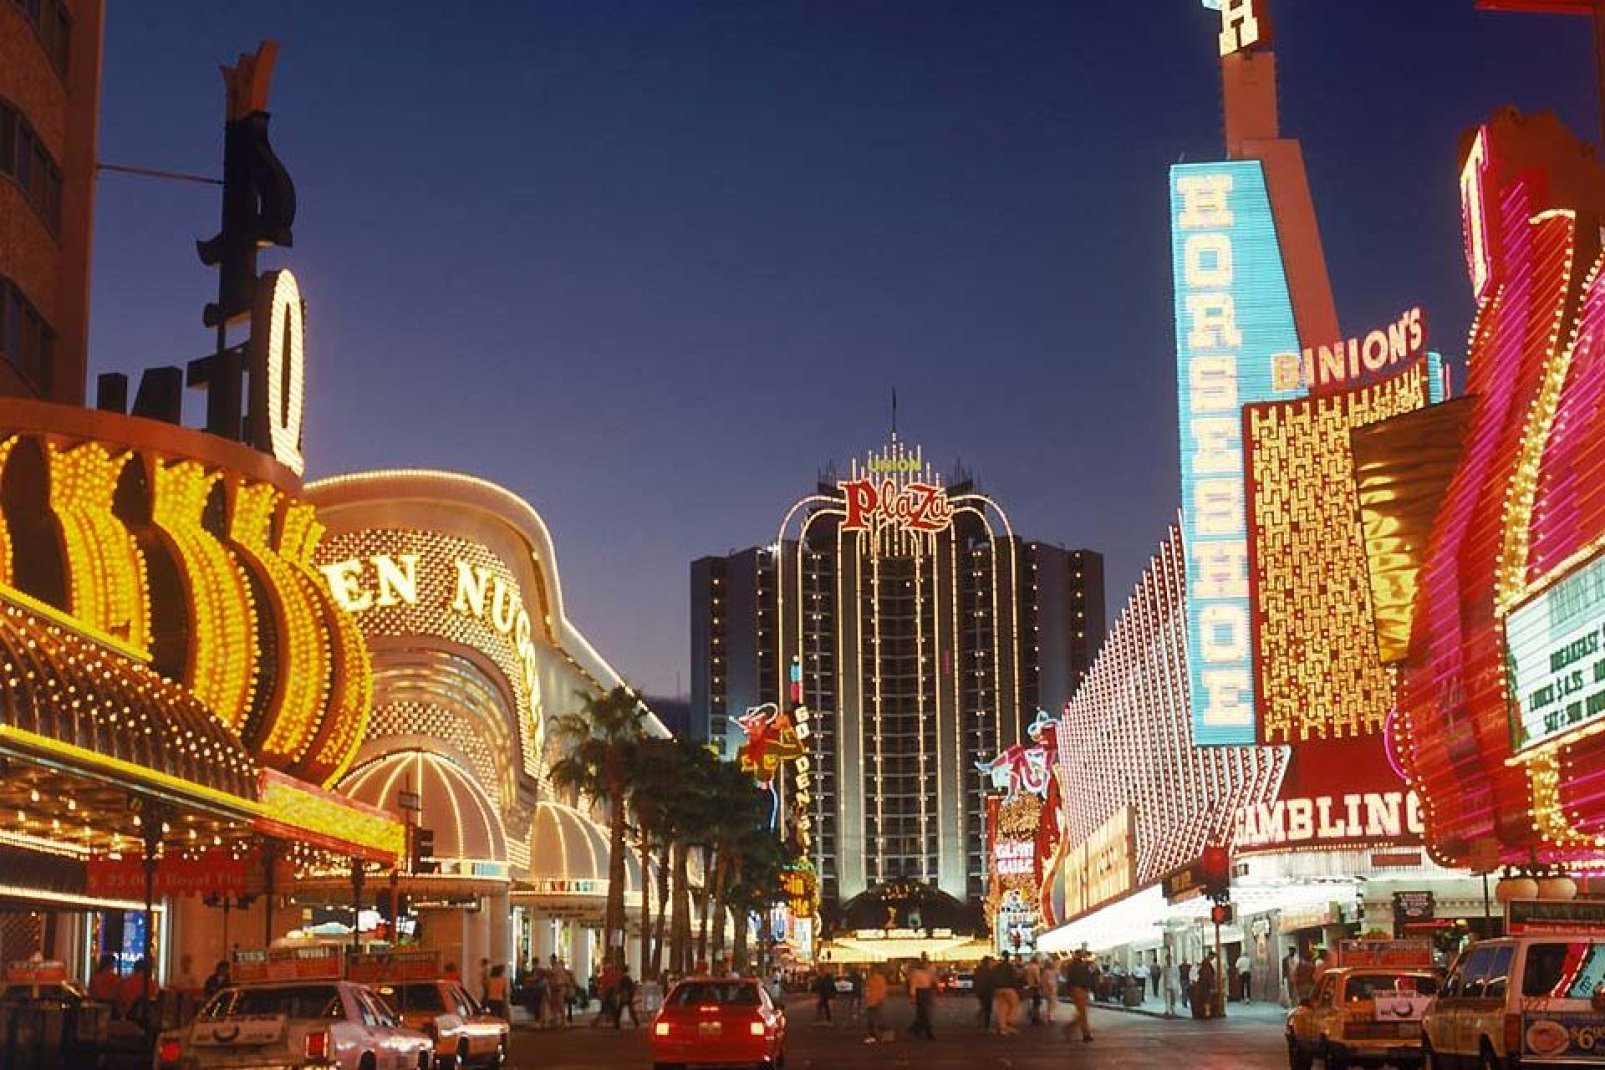 Una muestra de la numerosa colección de casinos, hoteles y boutiques que posee Las Vegas.